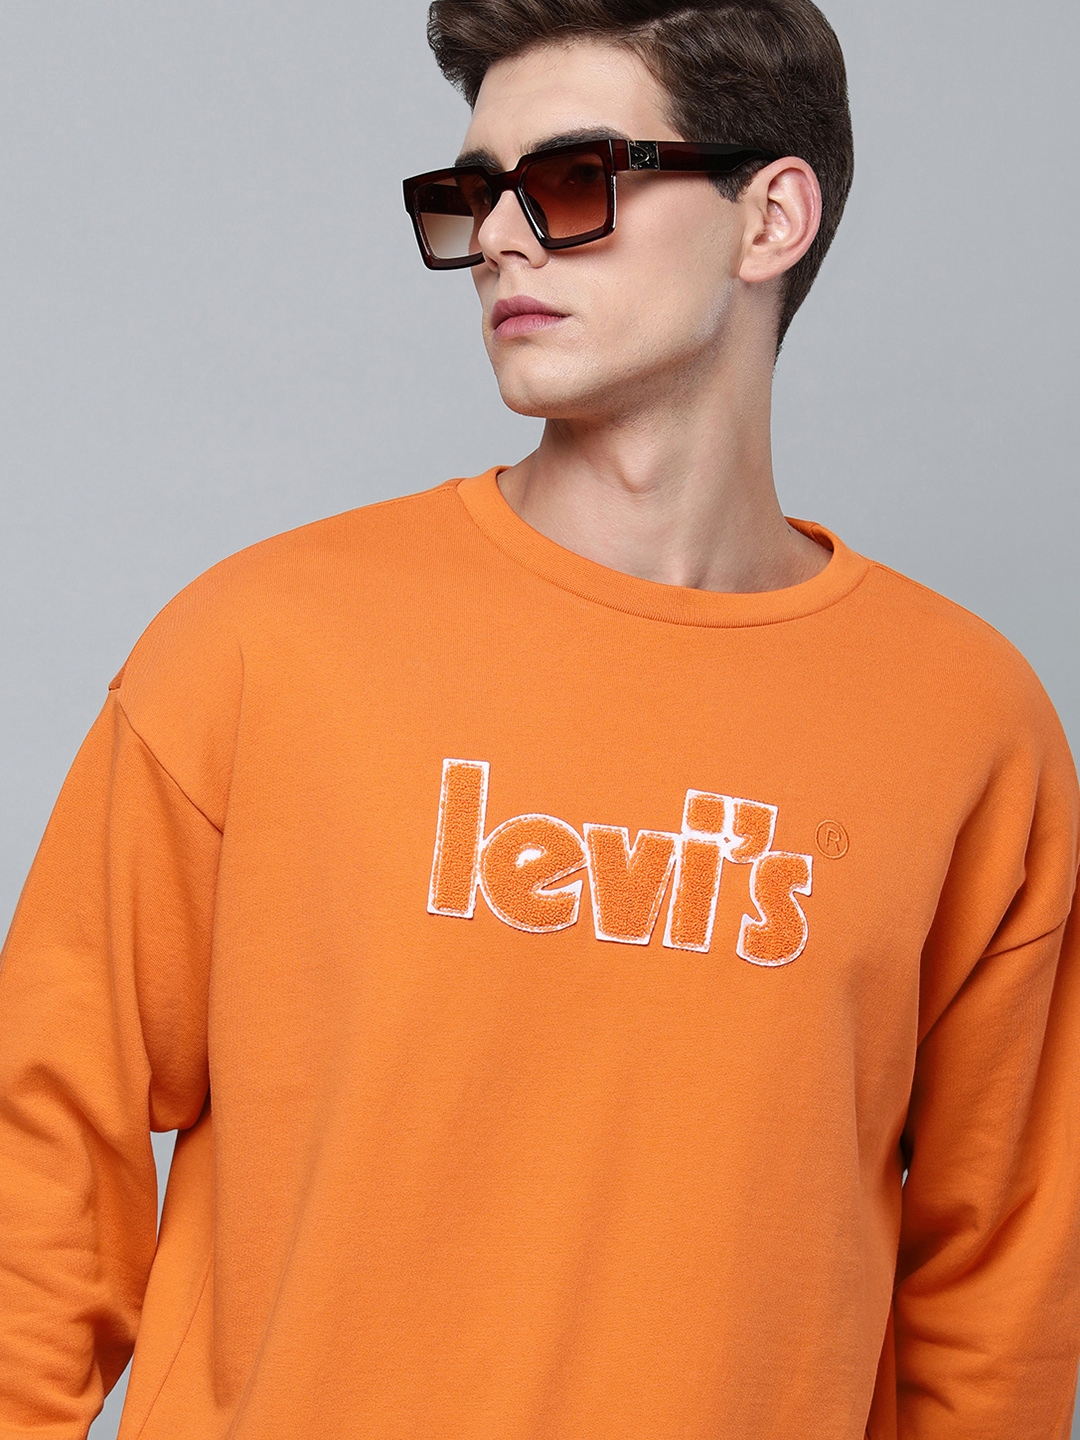 Levis Men Orange Typography Printed Full Sleeved Casual Sweatshirt